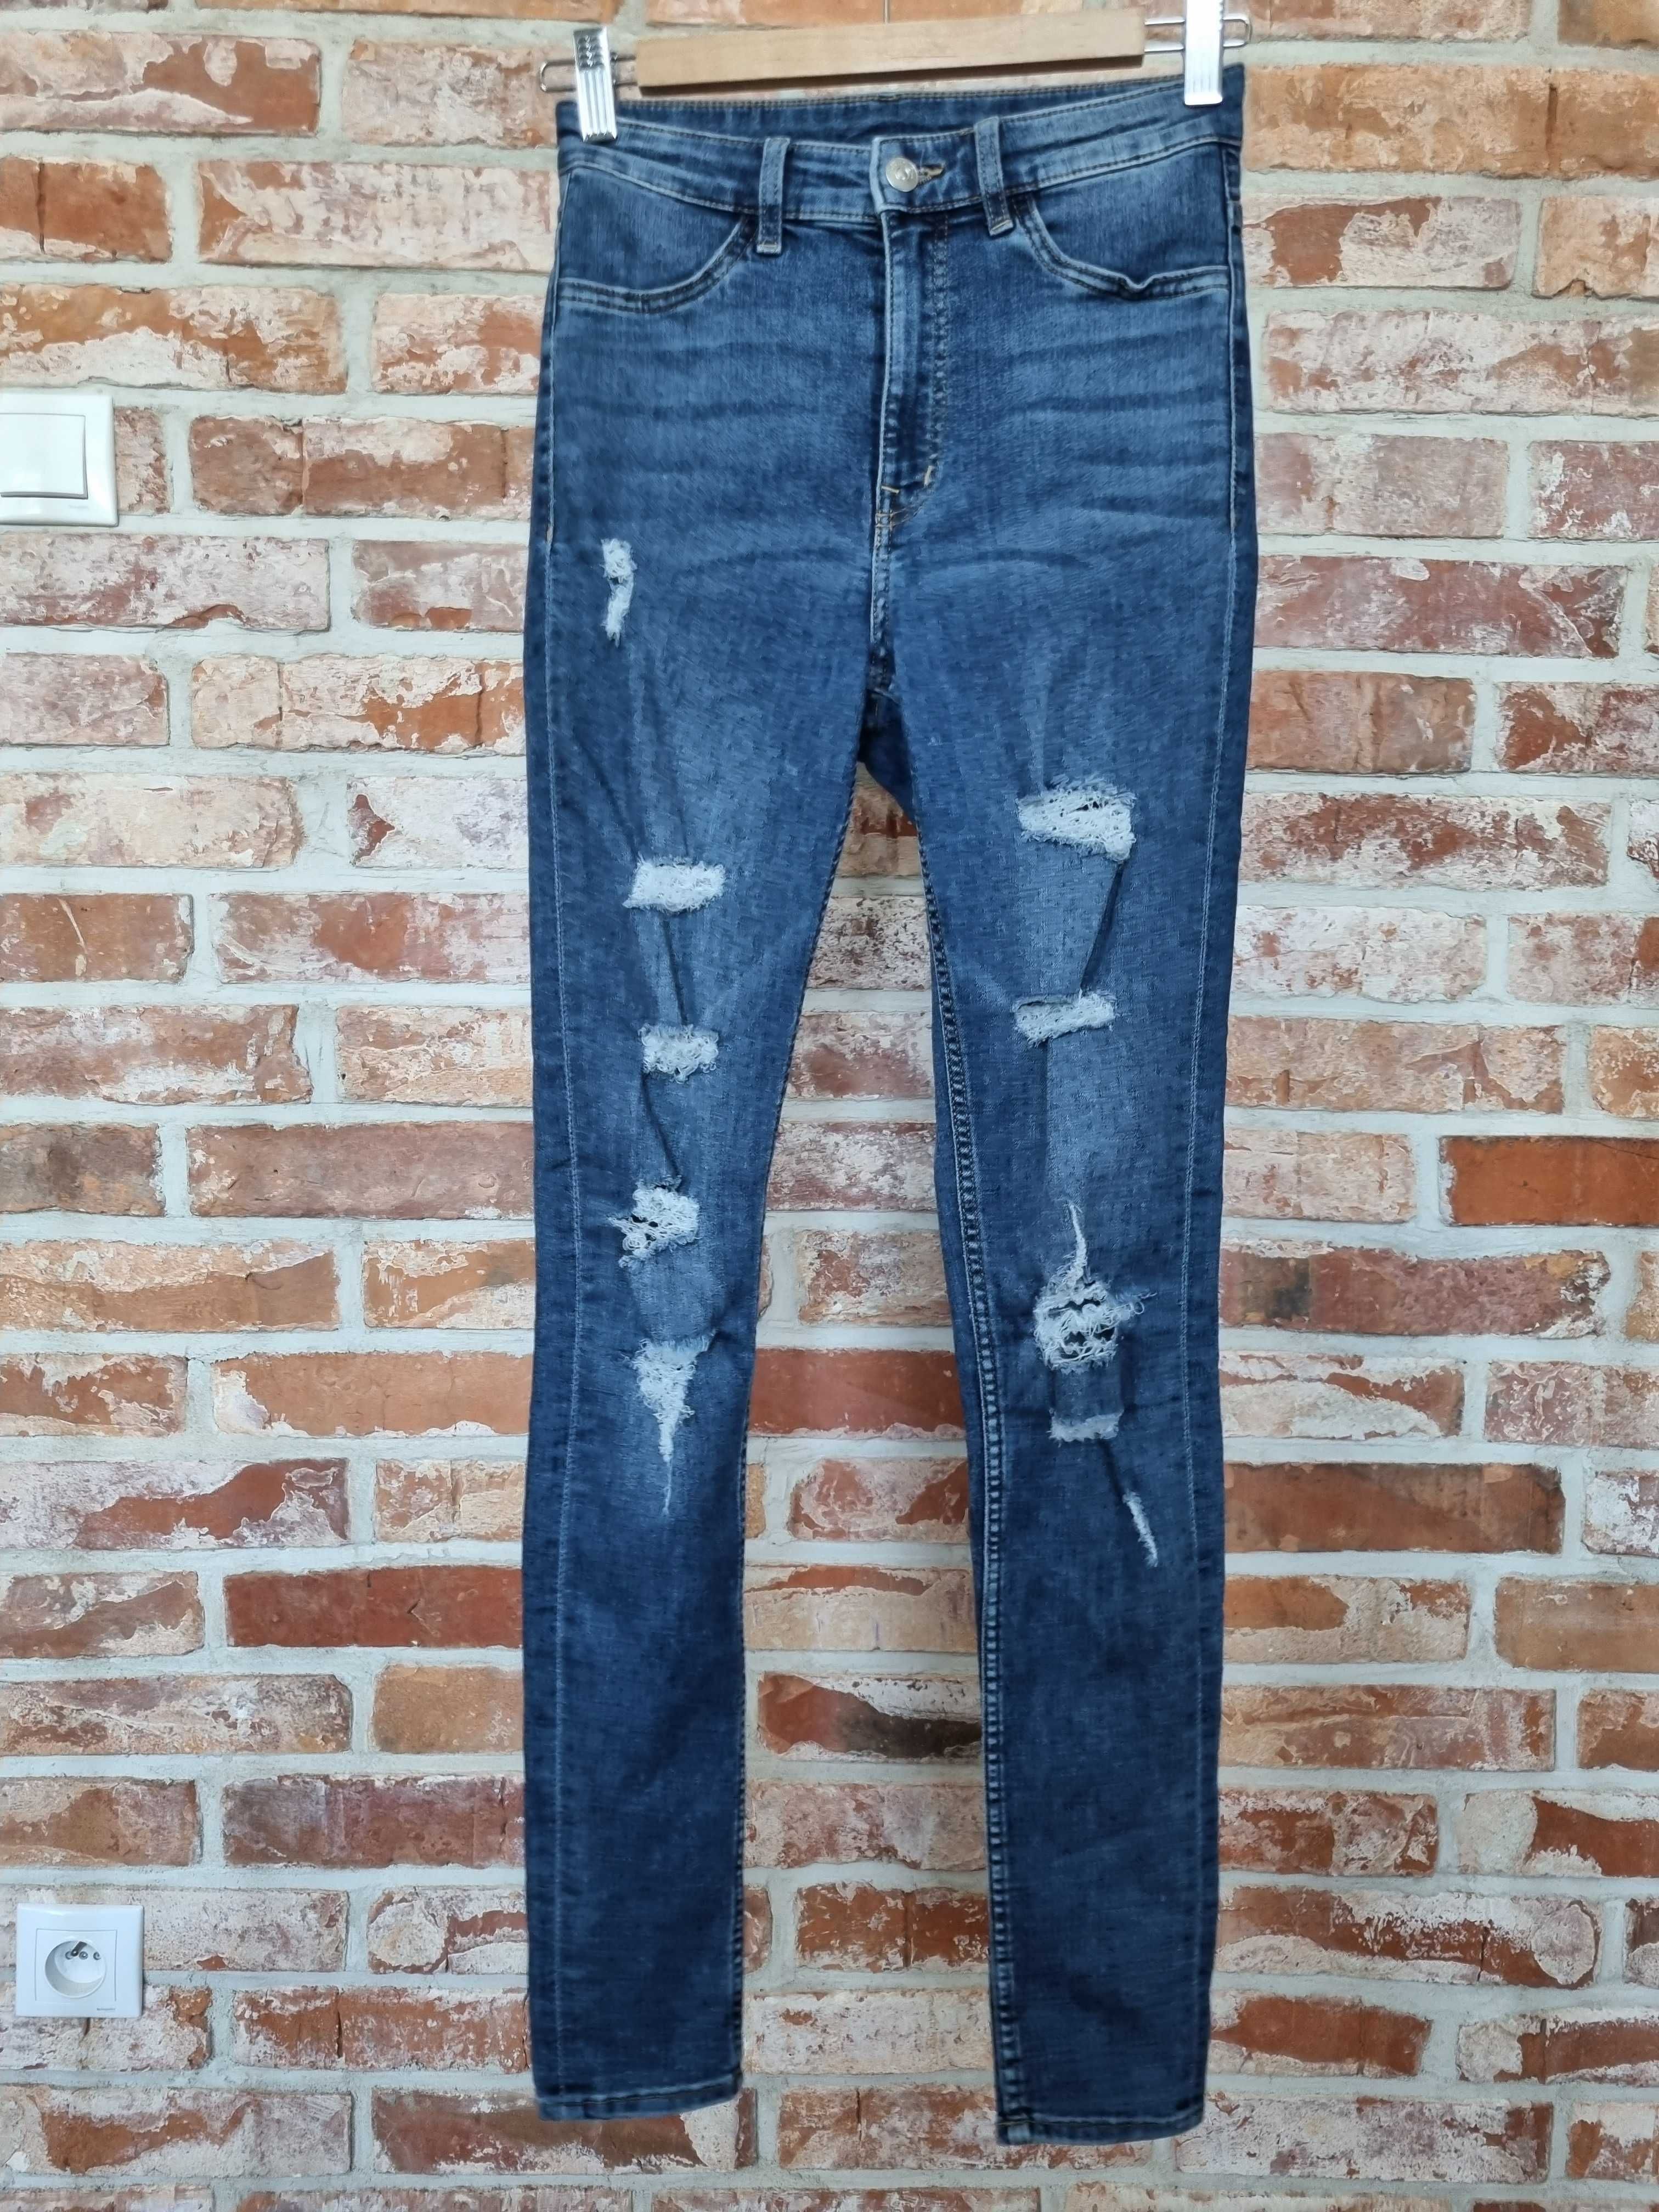 Spodnie jeansowe H&M 34